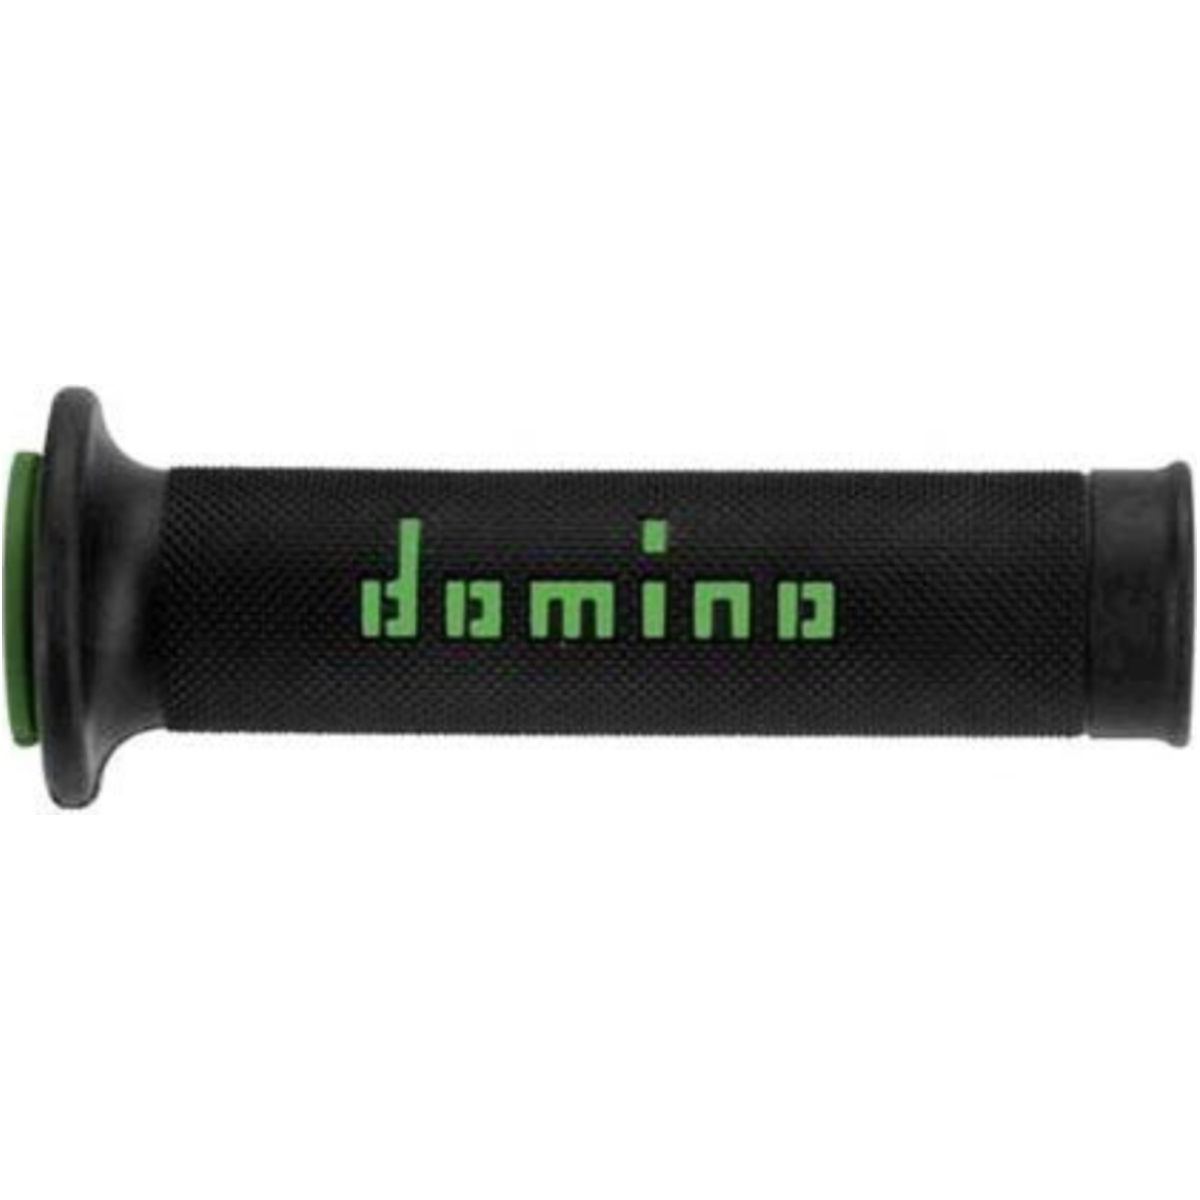 Lenkergriffe griffgummi schwarz/grün domino a01041c4440b70 von Domino